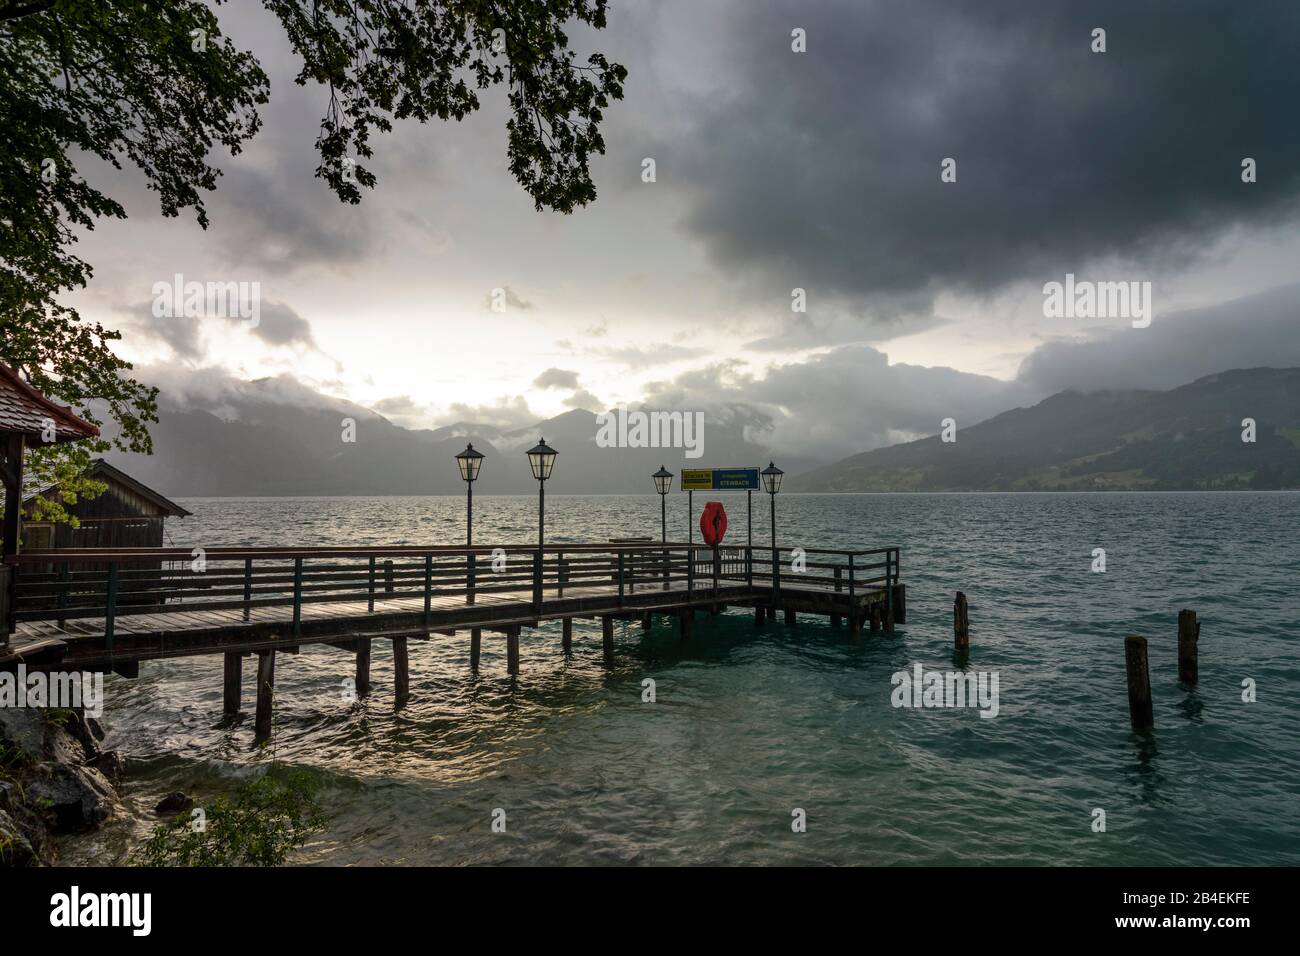 Steinbach am Attersee, lake Attersee, rain storm, jetty in Salzkammergut, Oberösterreich, Upper Austria, Austria Stock Photo